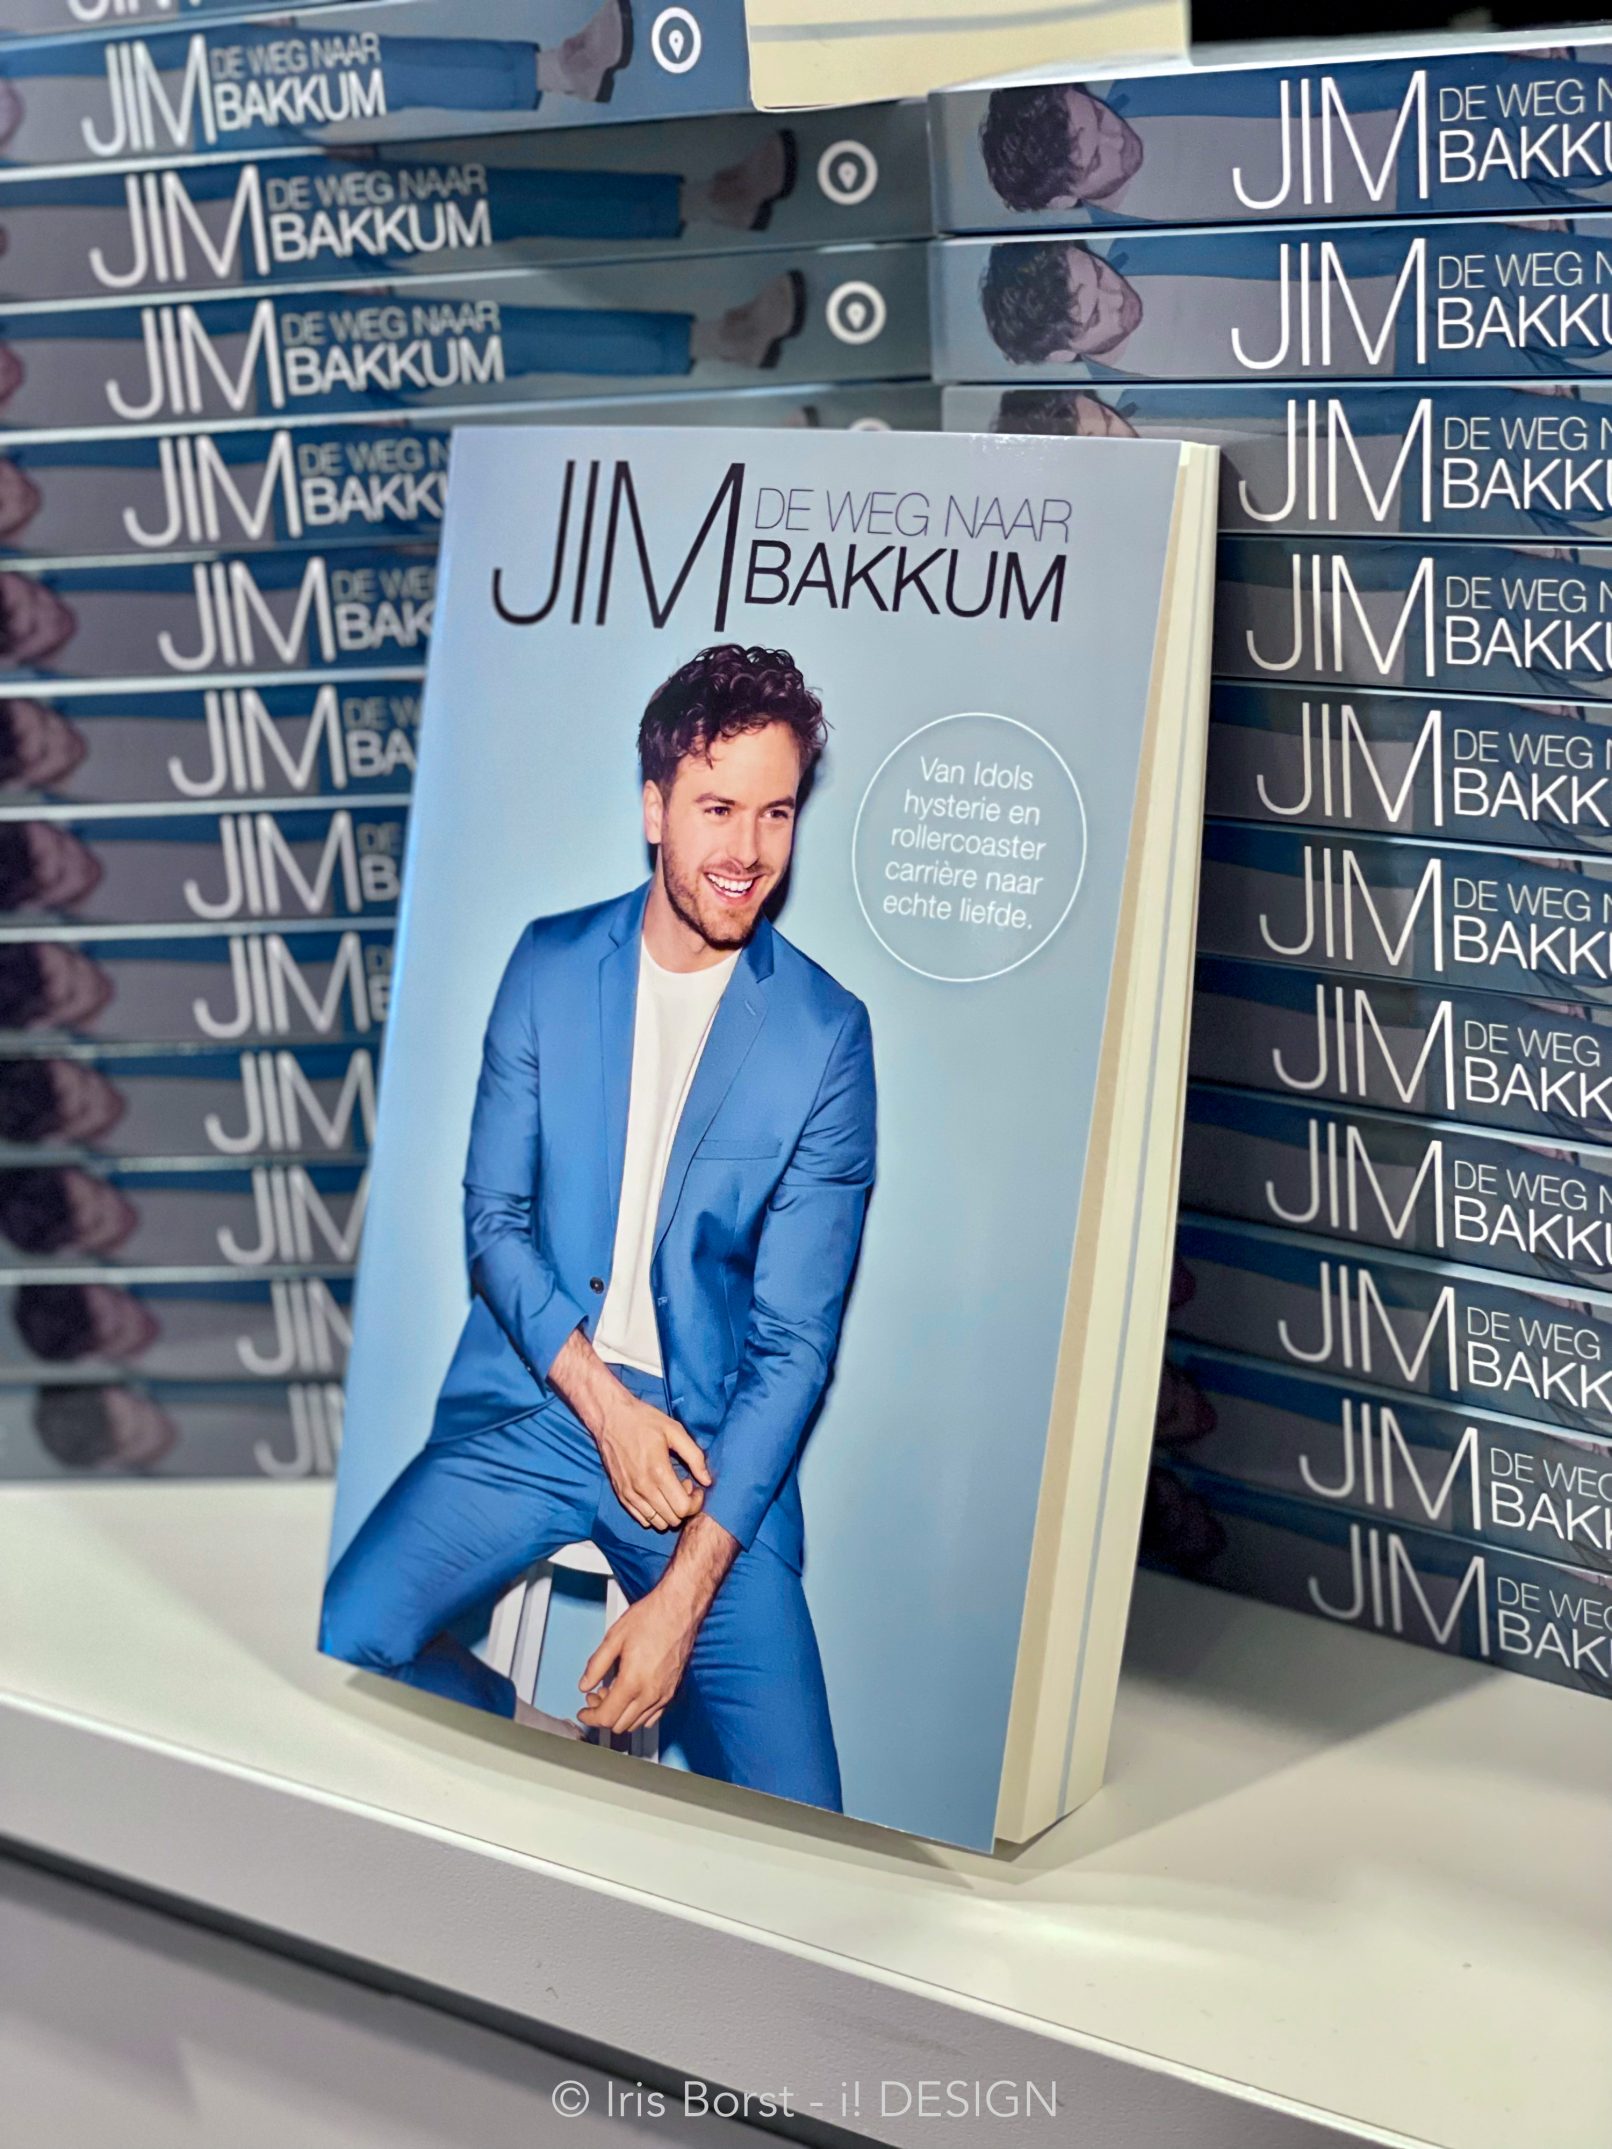 Jim Bakkum boekpresentatie boek